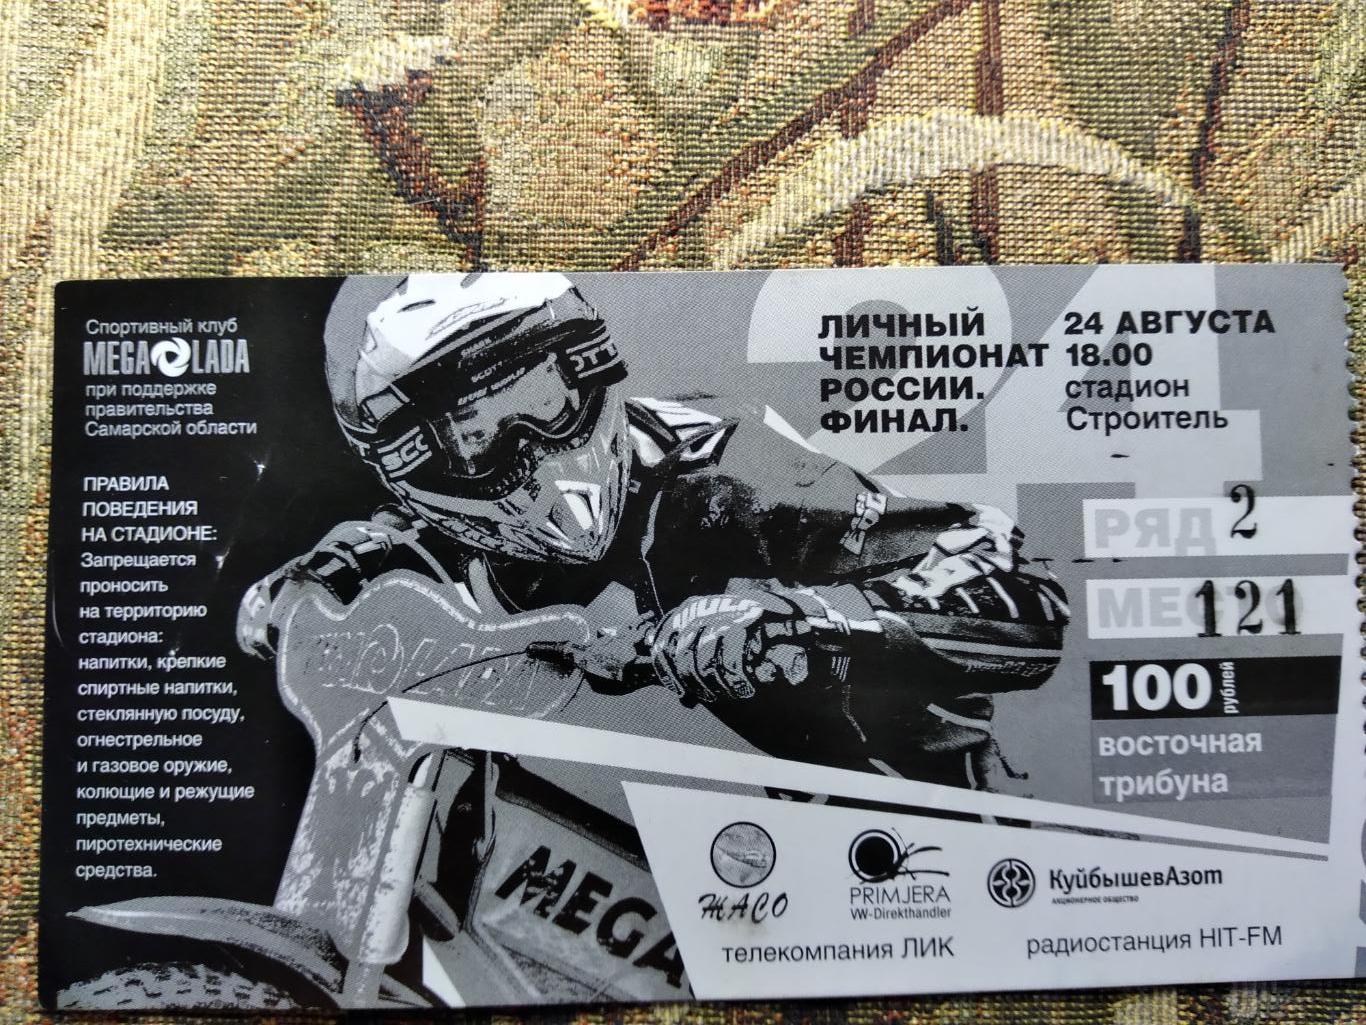 Билет на финал личного чемпионата России по спидвею 2009 г.Тольятти